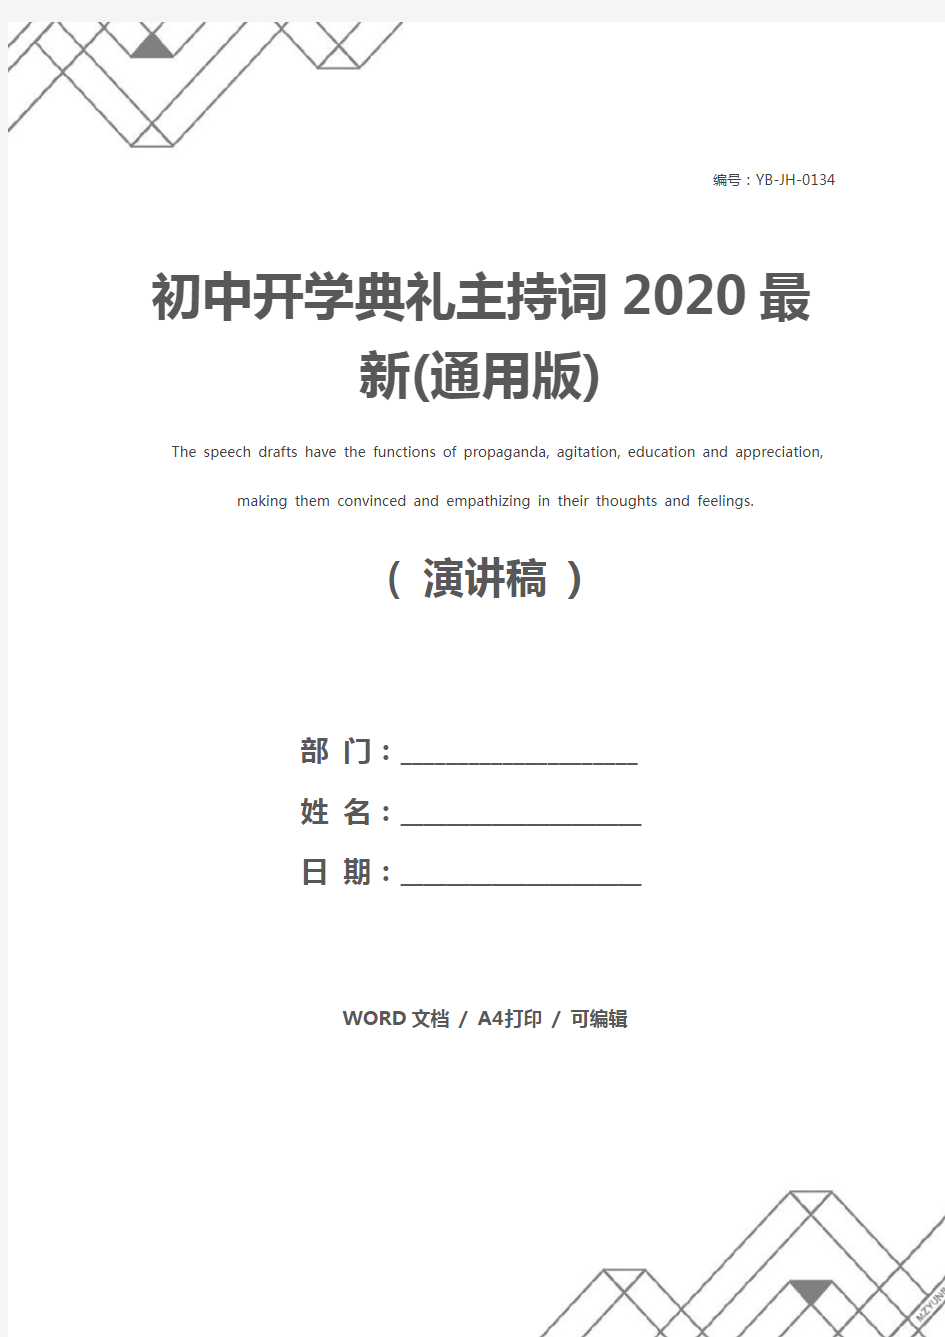 初中开学典礼主持词2020最新(通用版)